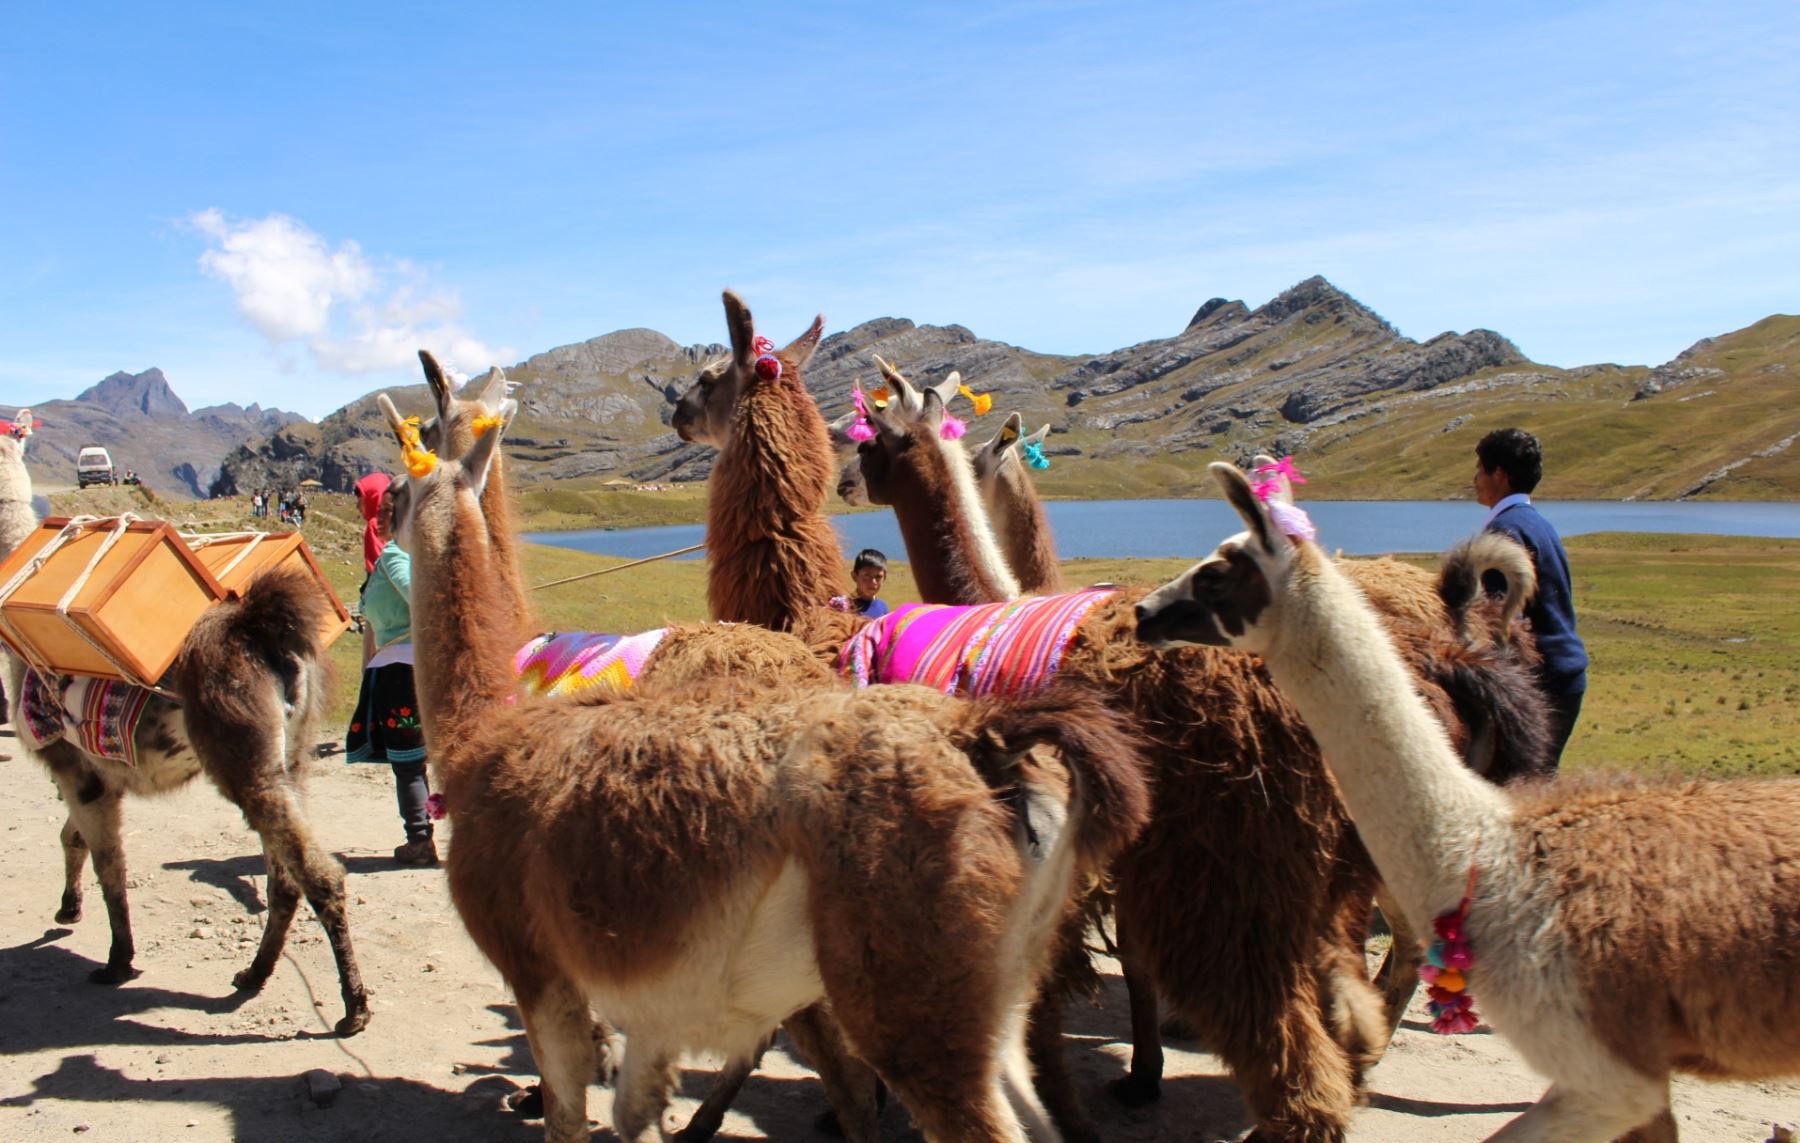 El agroturismo es la nueva apuesta de desarrollo sostenible con conservación en el Parque Nacional Huascarán. ANDINA/Sernanp